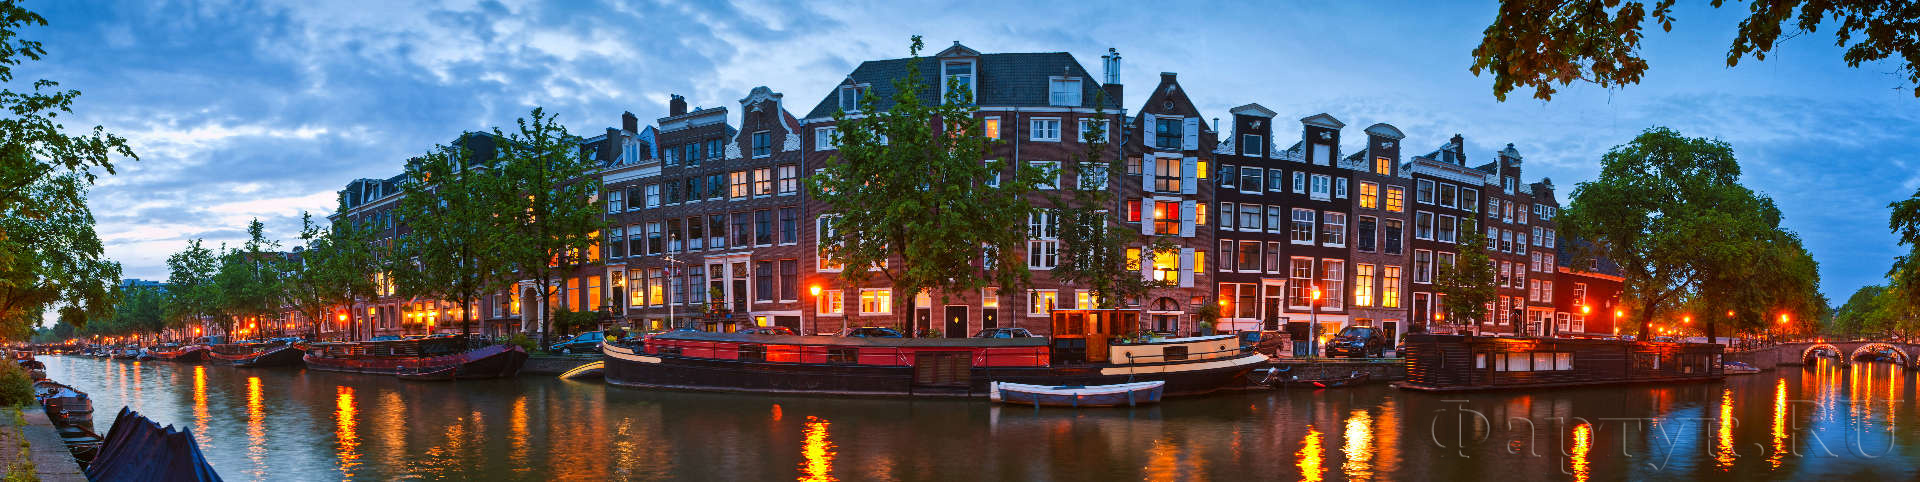 Городской канал, Амстердам